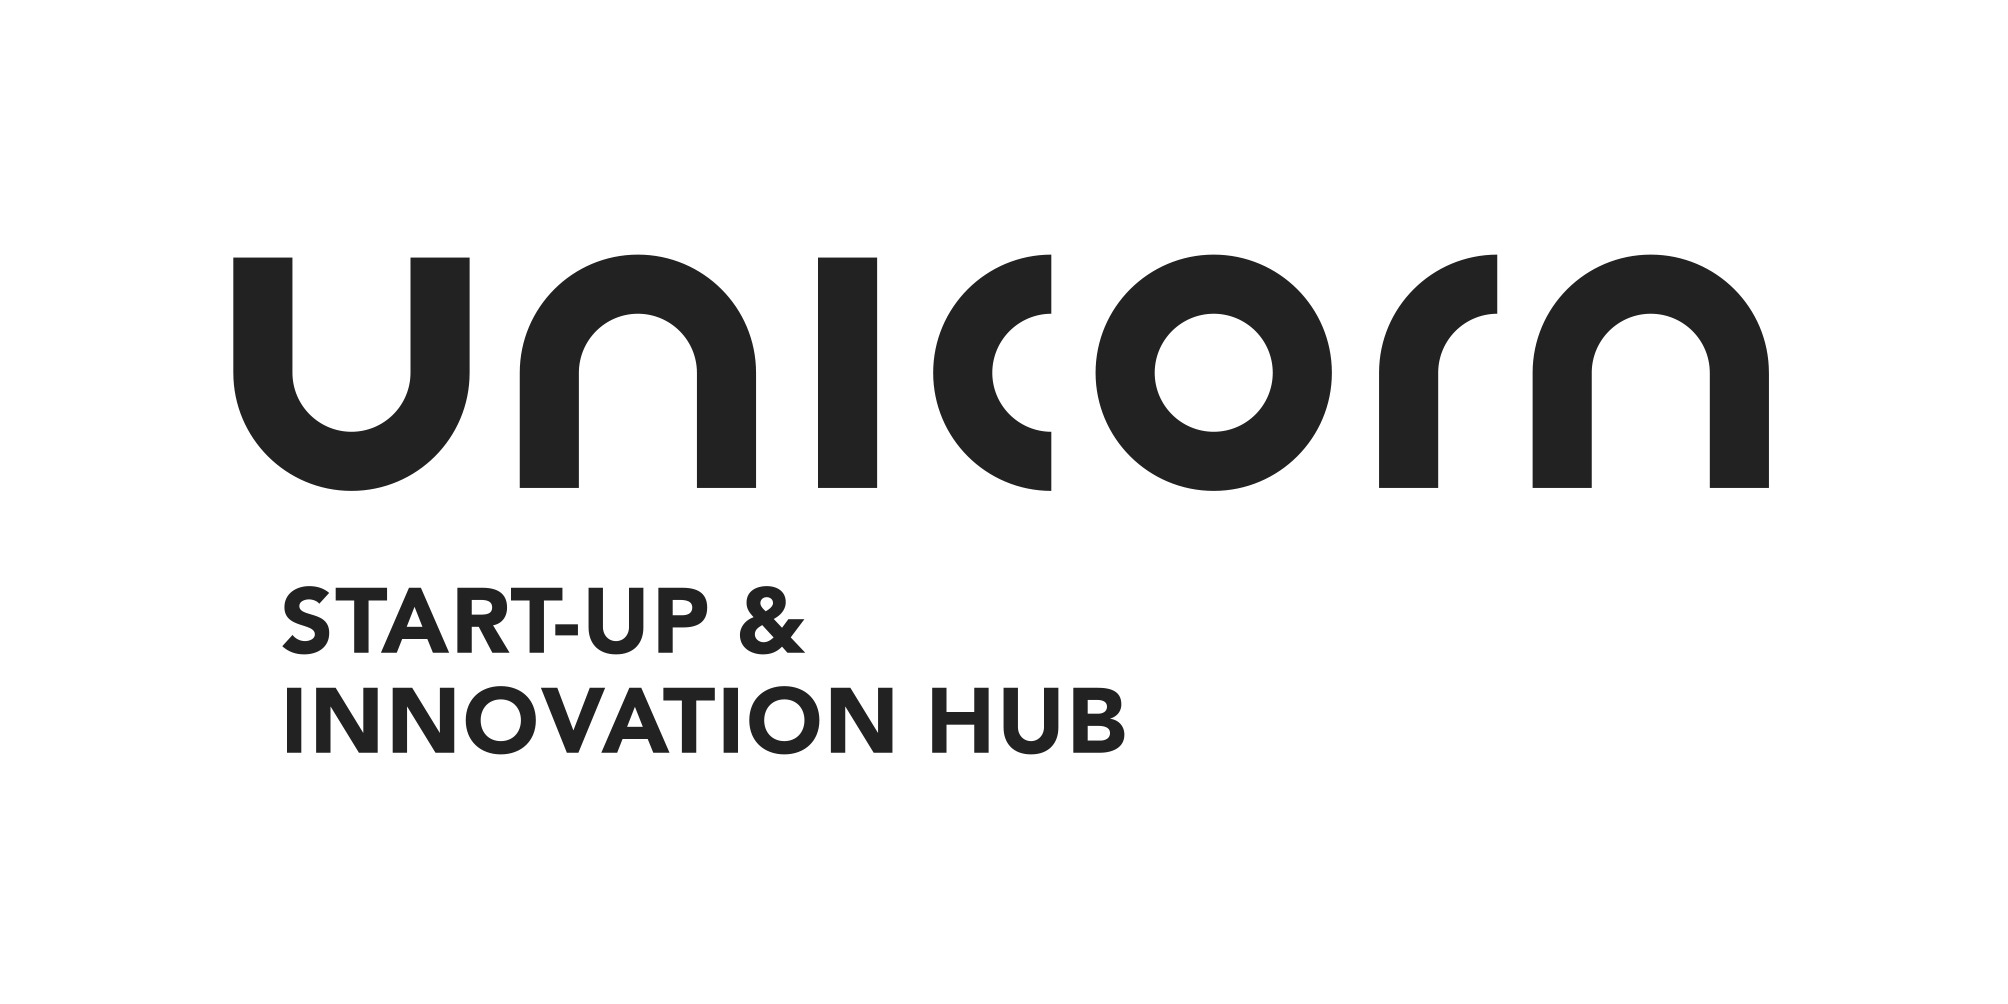 02_UNICORN_LOGO_Start-Up_&_Inno-Hub+safe-area